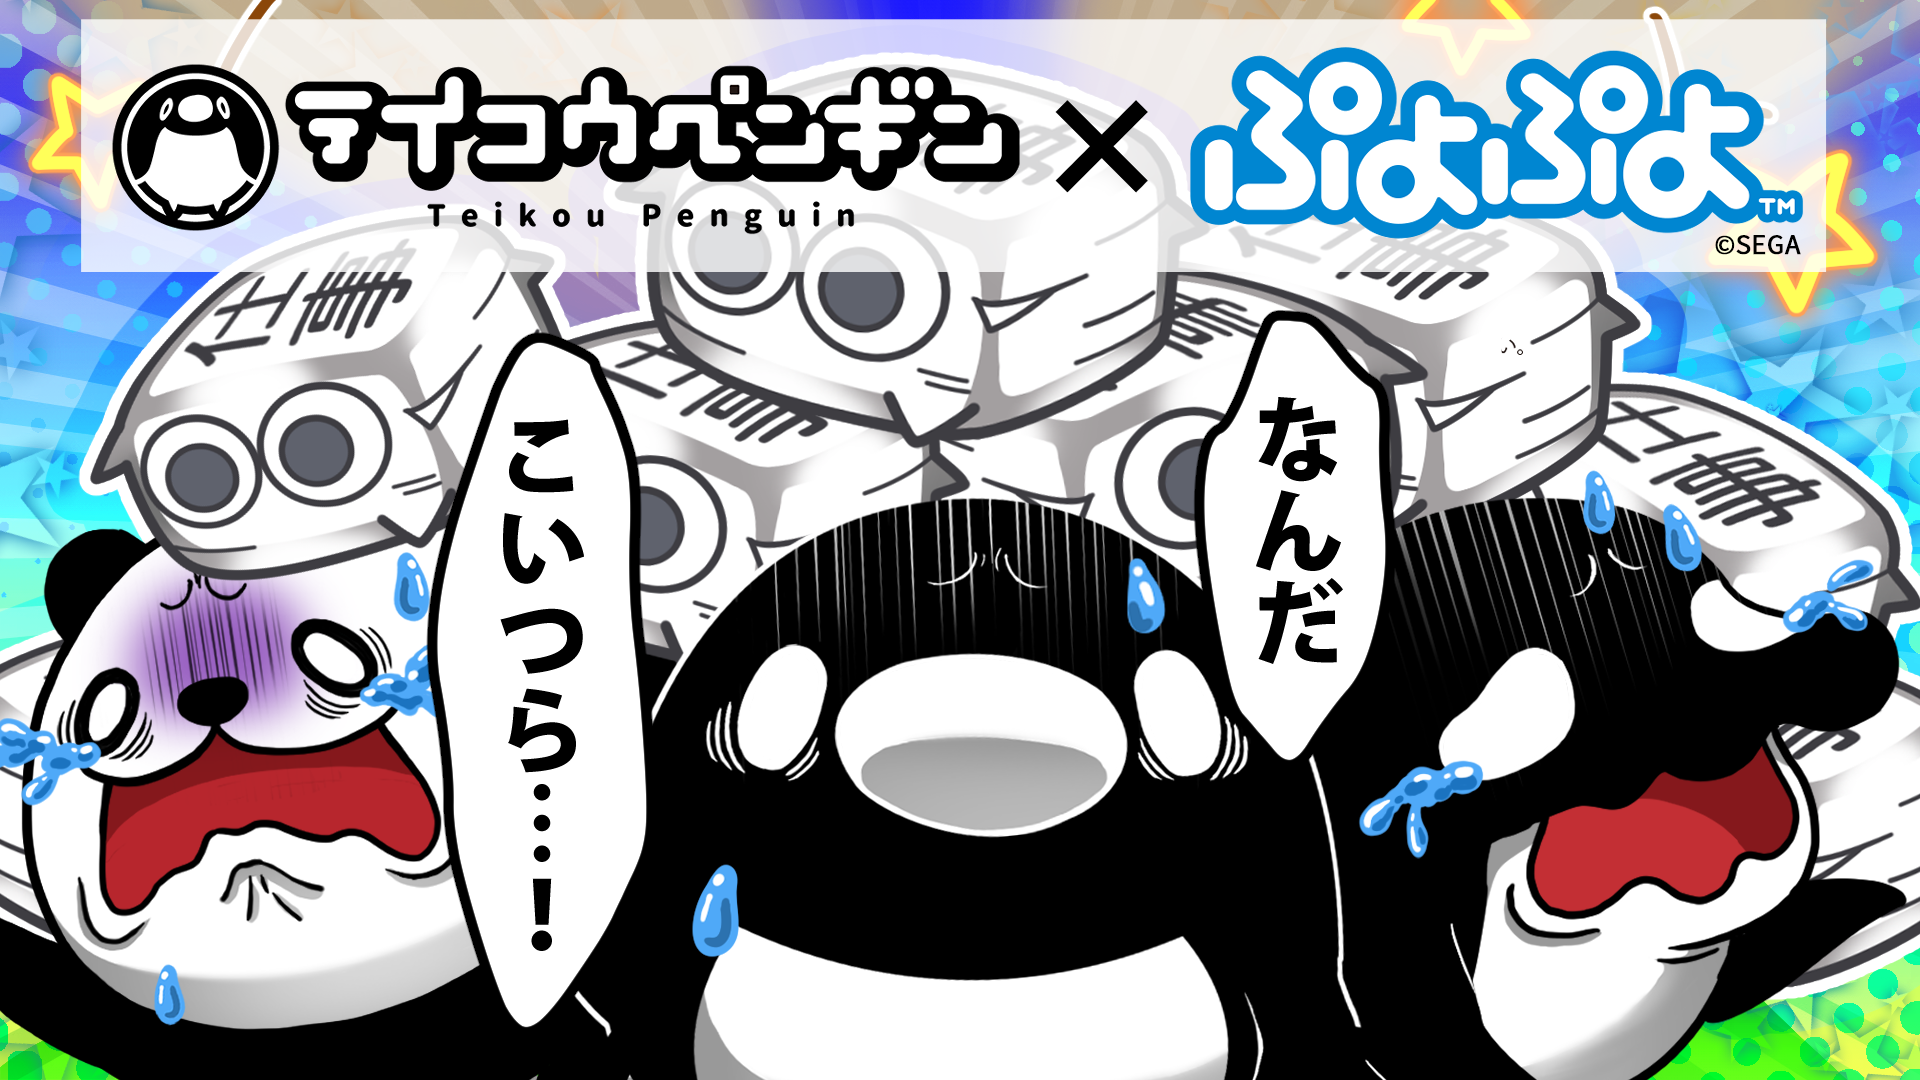 今年30周年を迎えた ぷよぷよ とyoutubeアニメ テイコウペンギン コラボアニメが本日公開 株式会社セガのプレスリリース